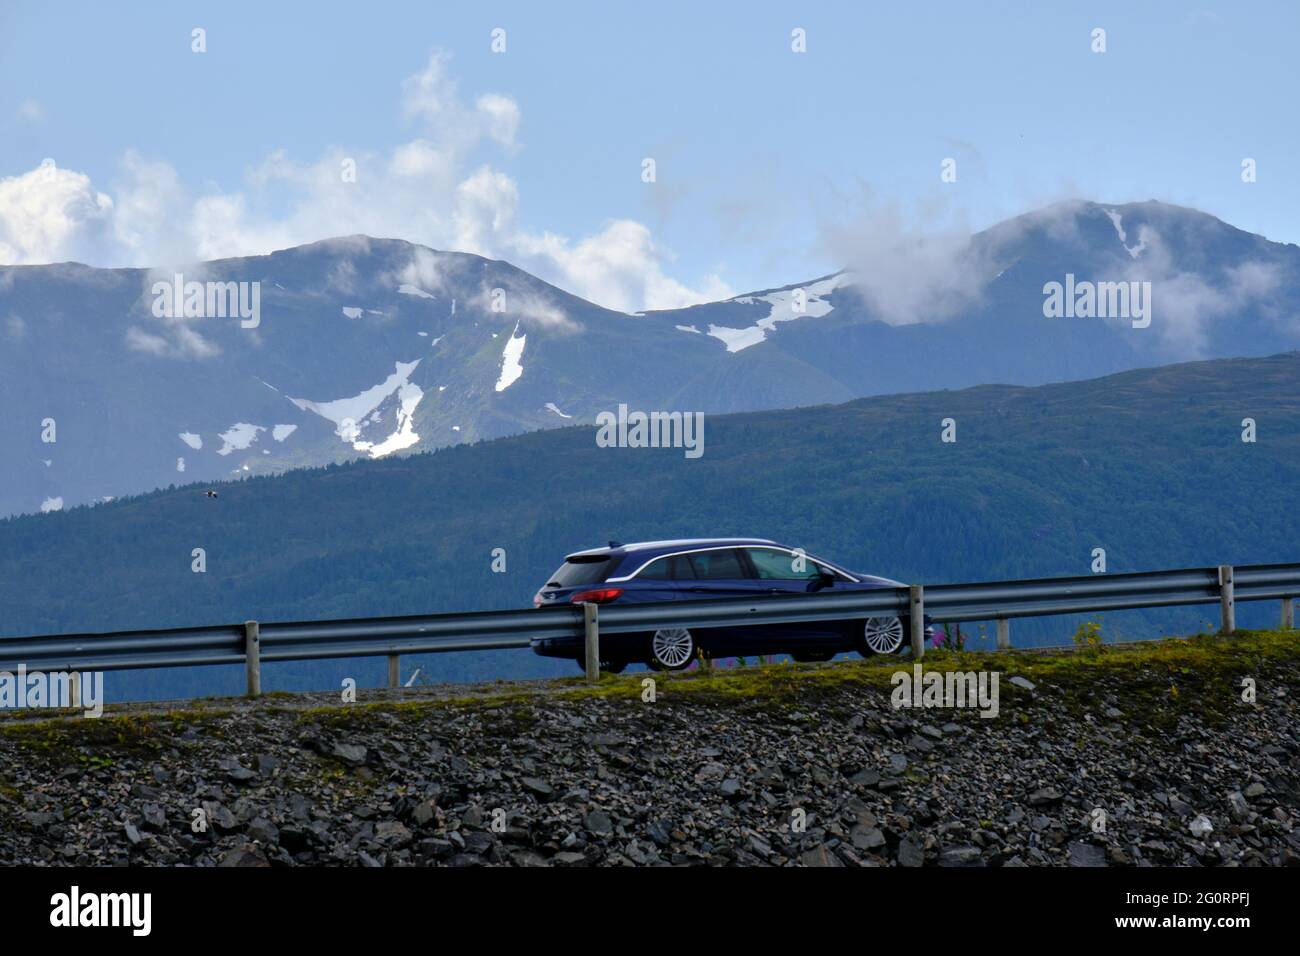 VEVANG, NORVEGIA - 27 luglio 2020: Un'auto turistica è in viaggio tra le montagne innevate, vicino alla strada dell'Oceano Atlantico in Norvegia Foto Stock